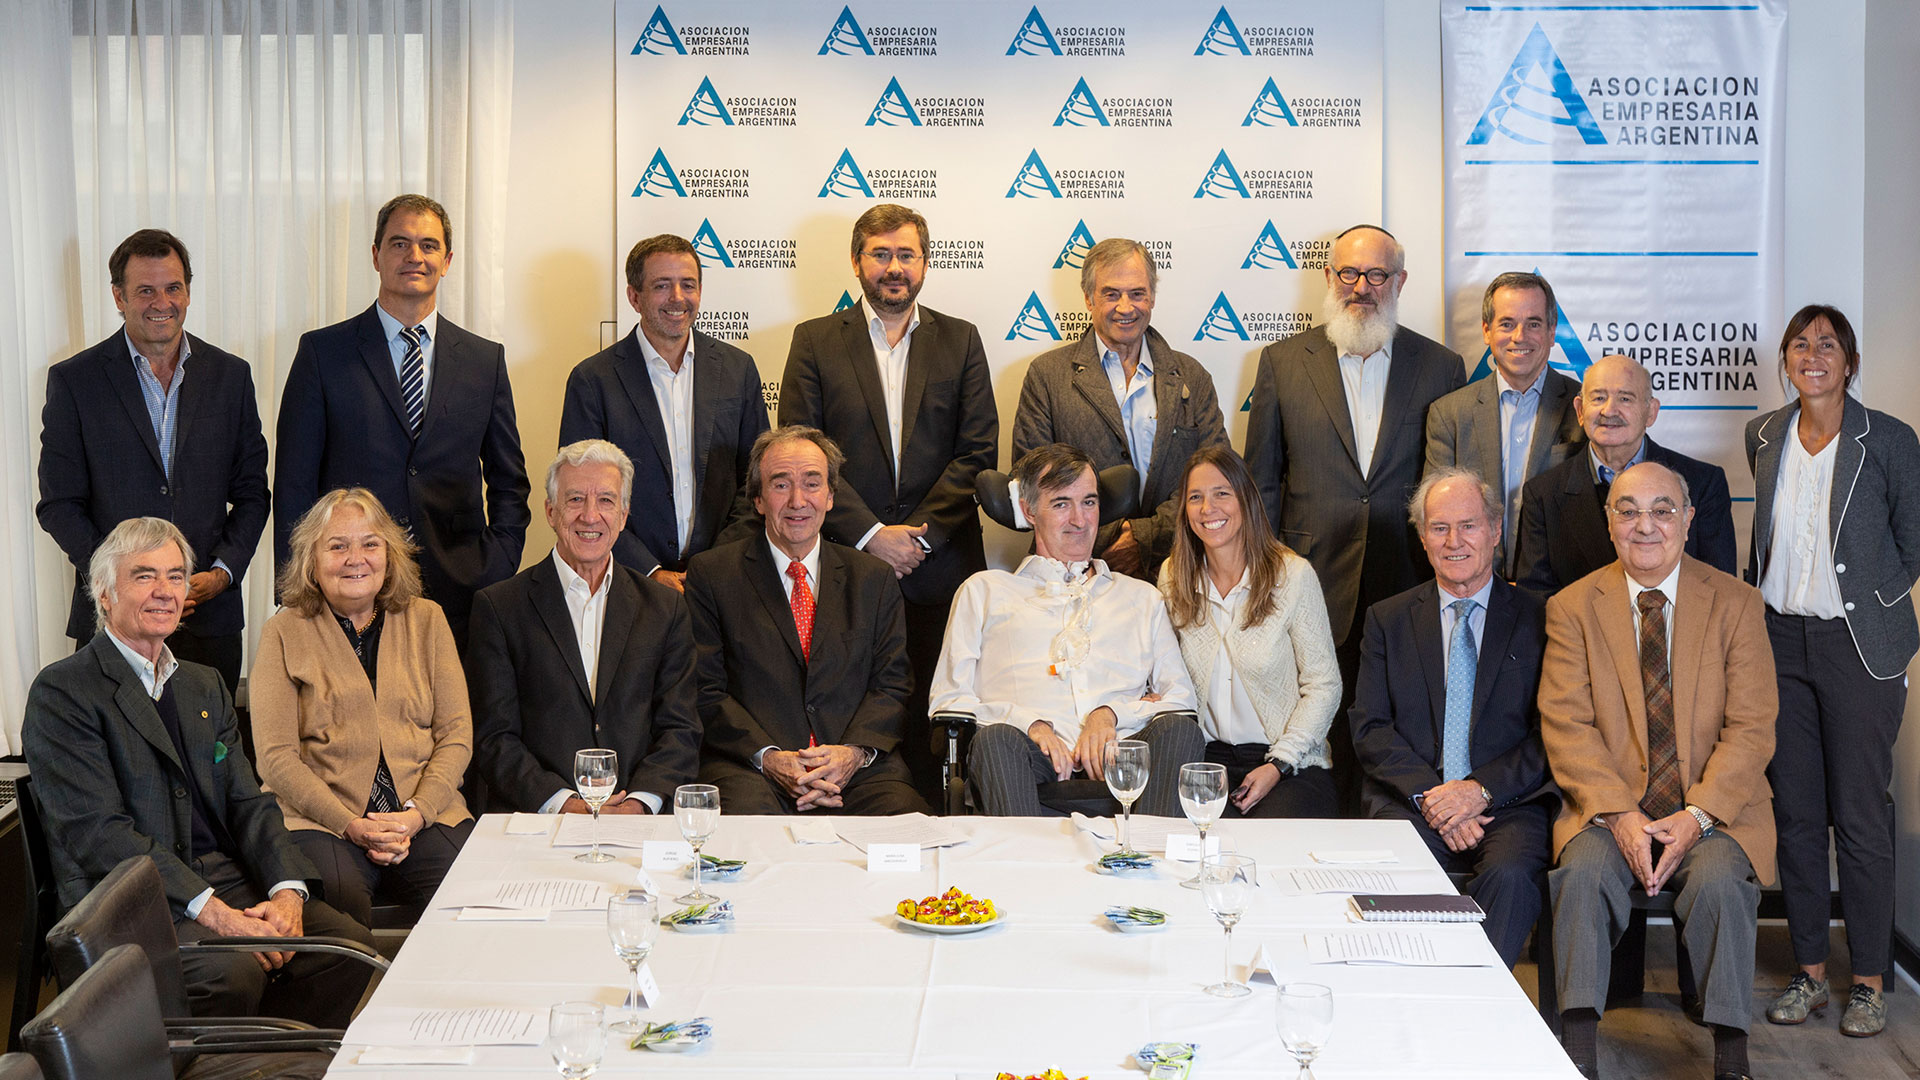 La Asociación Empresaria Argentina se reunió con Esteban Bullrich y apoyó su propuesta de acuerdo nacional